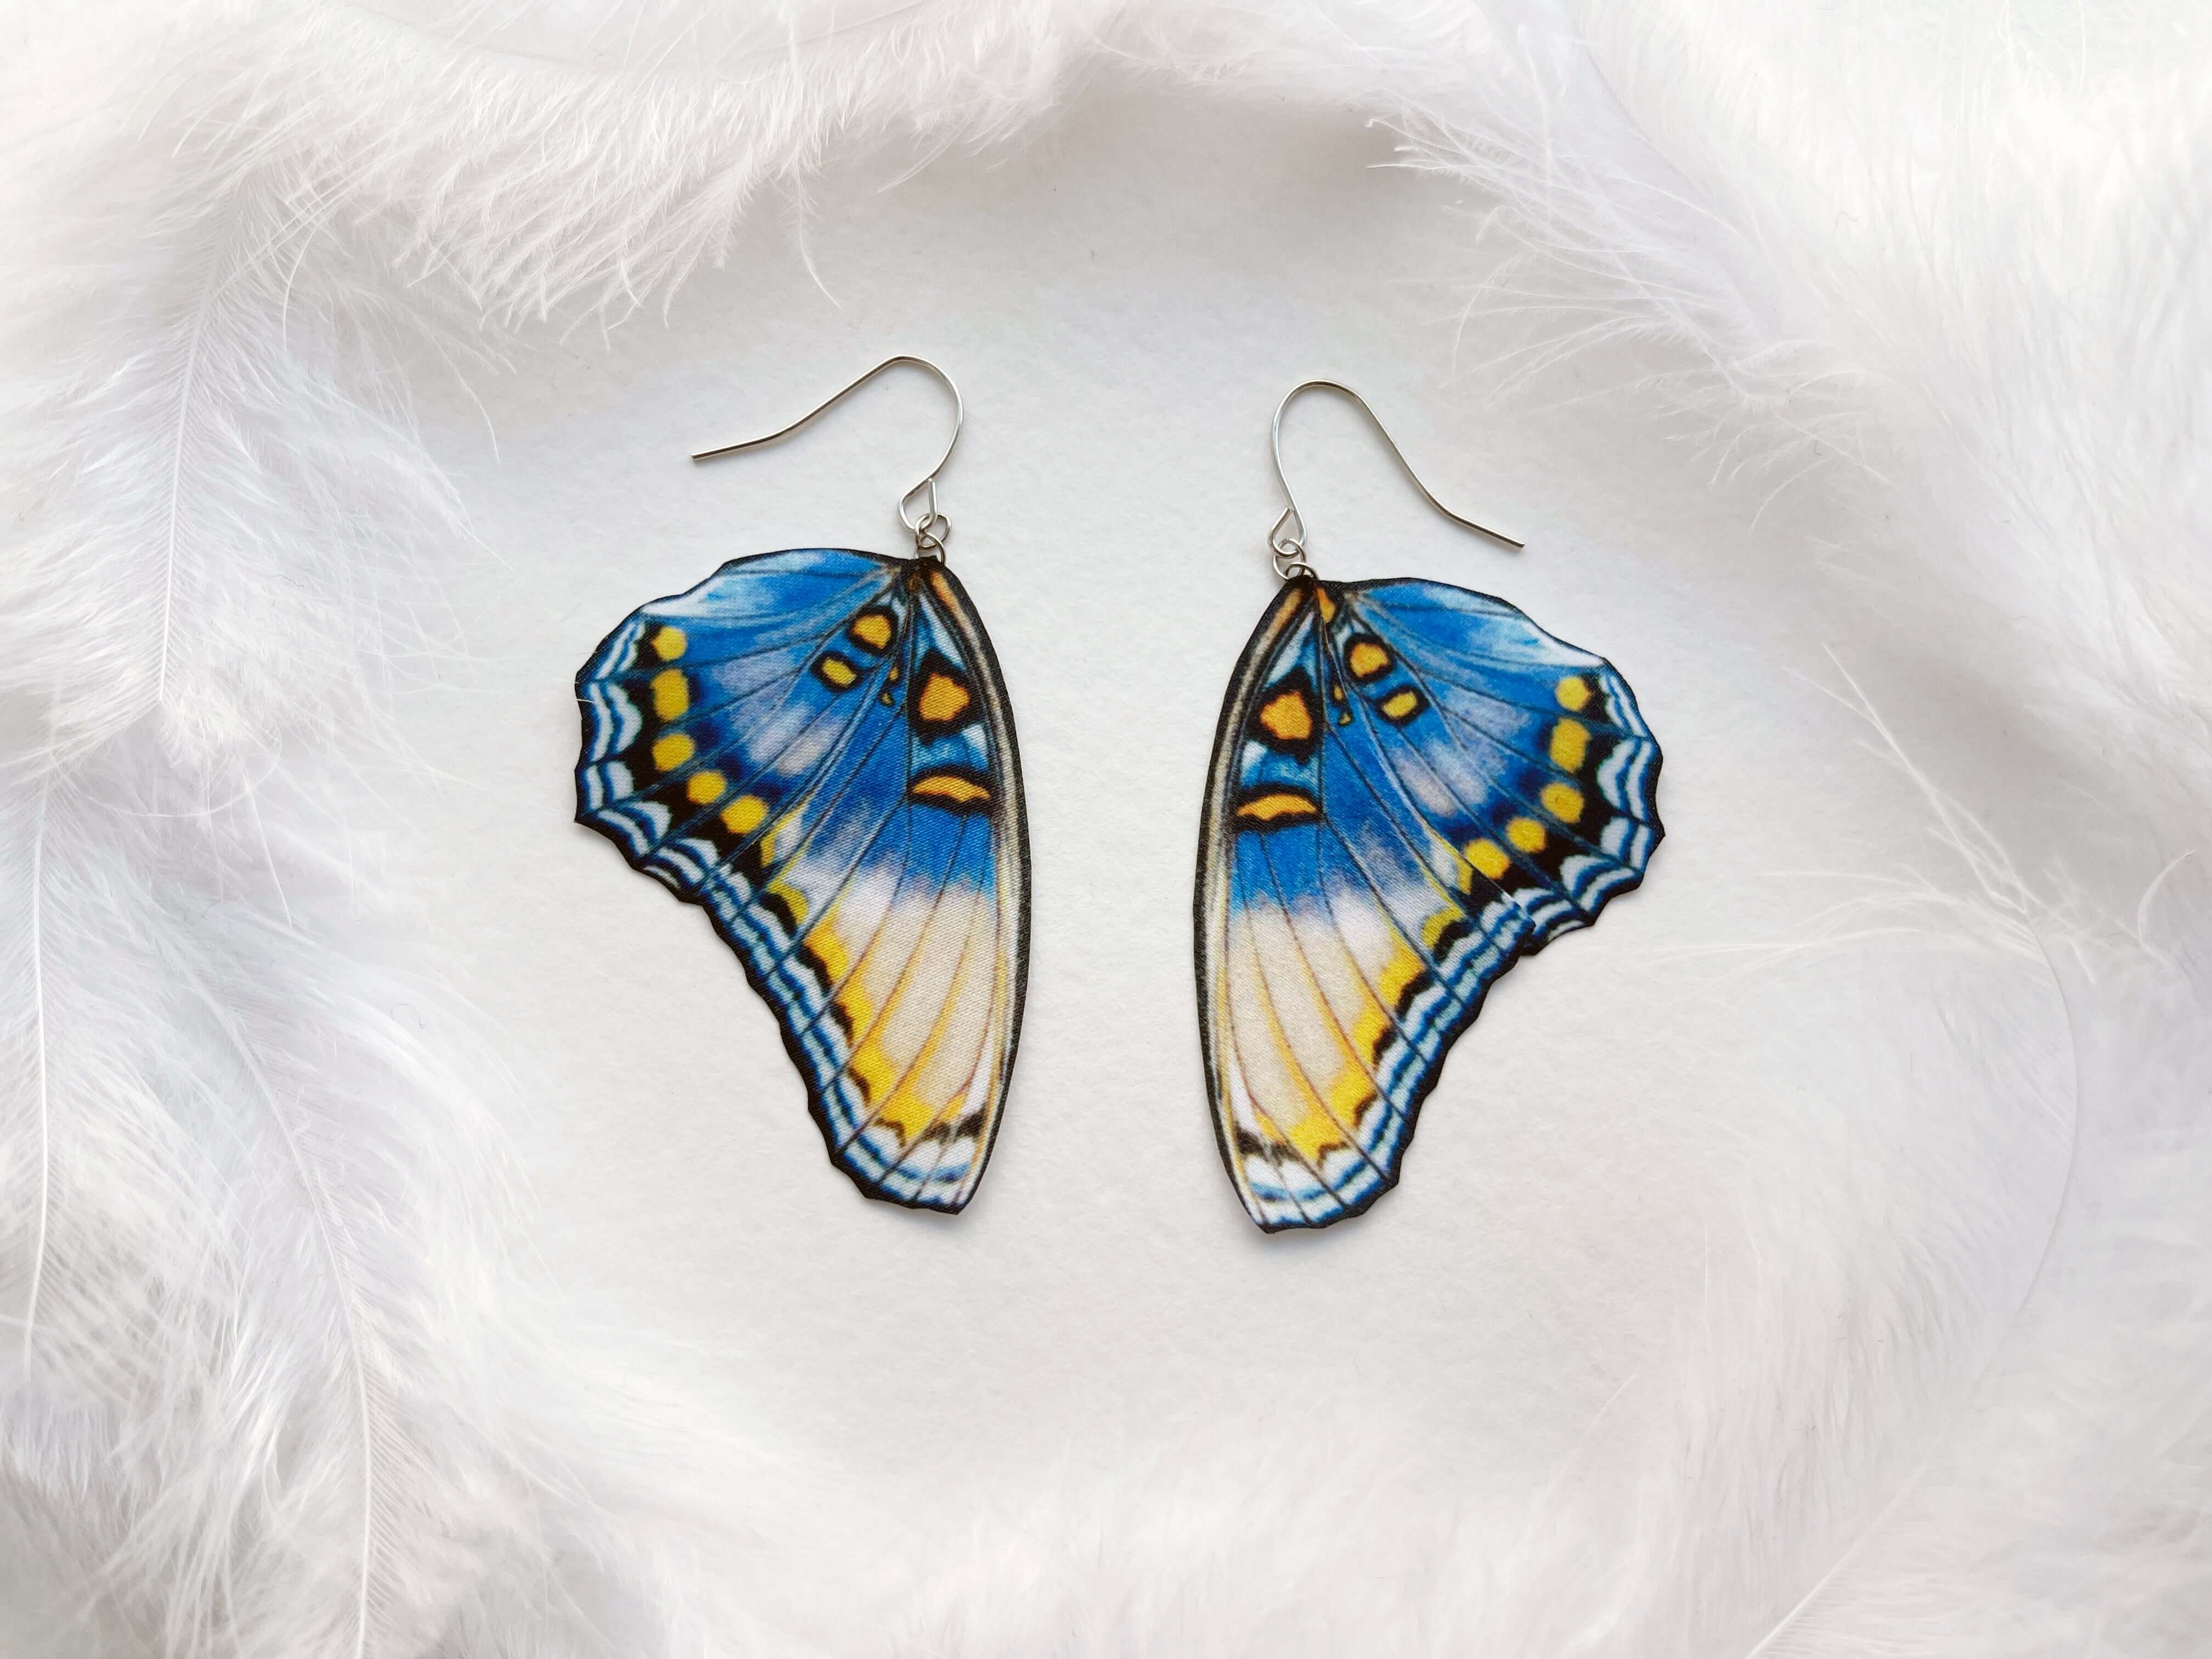 Fairy Wing Earrings Sparkly Butterfly Wing Earrings - Etsy | Fairy jewelry, Butterfly  wing earrings, Etsy earrings